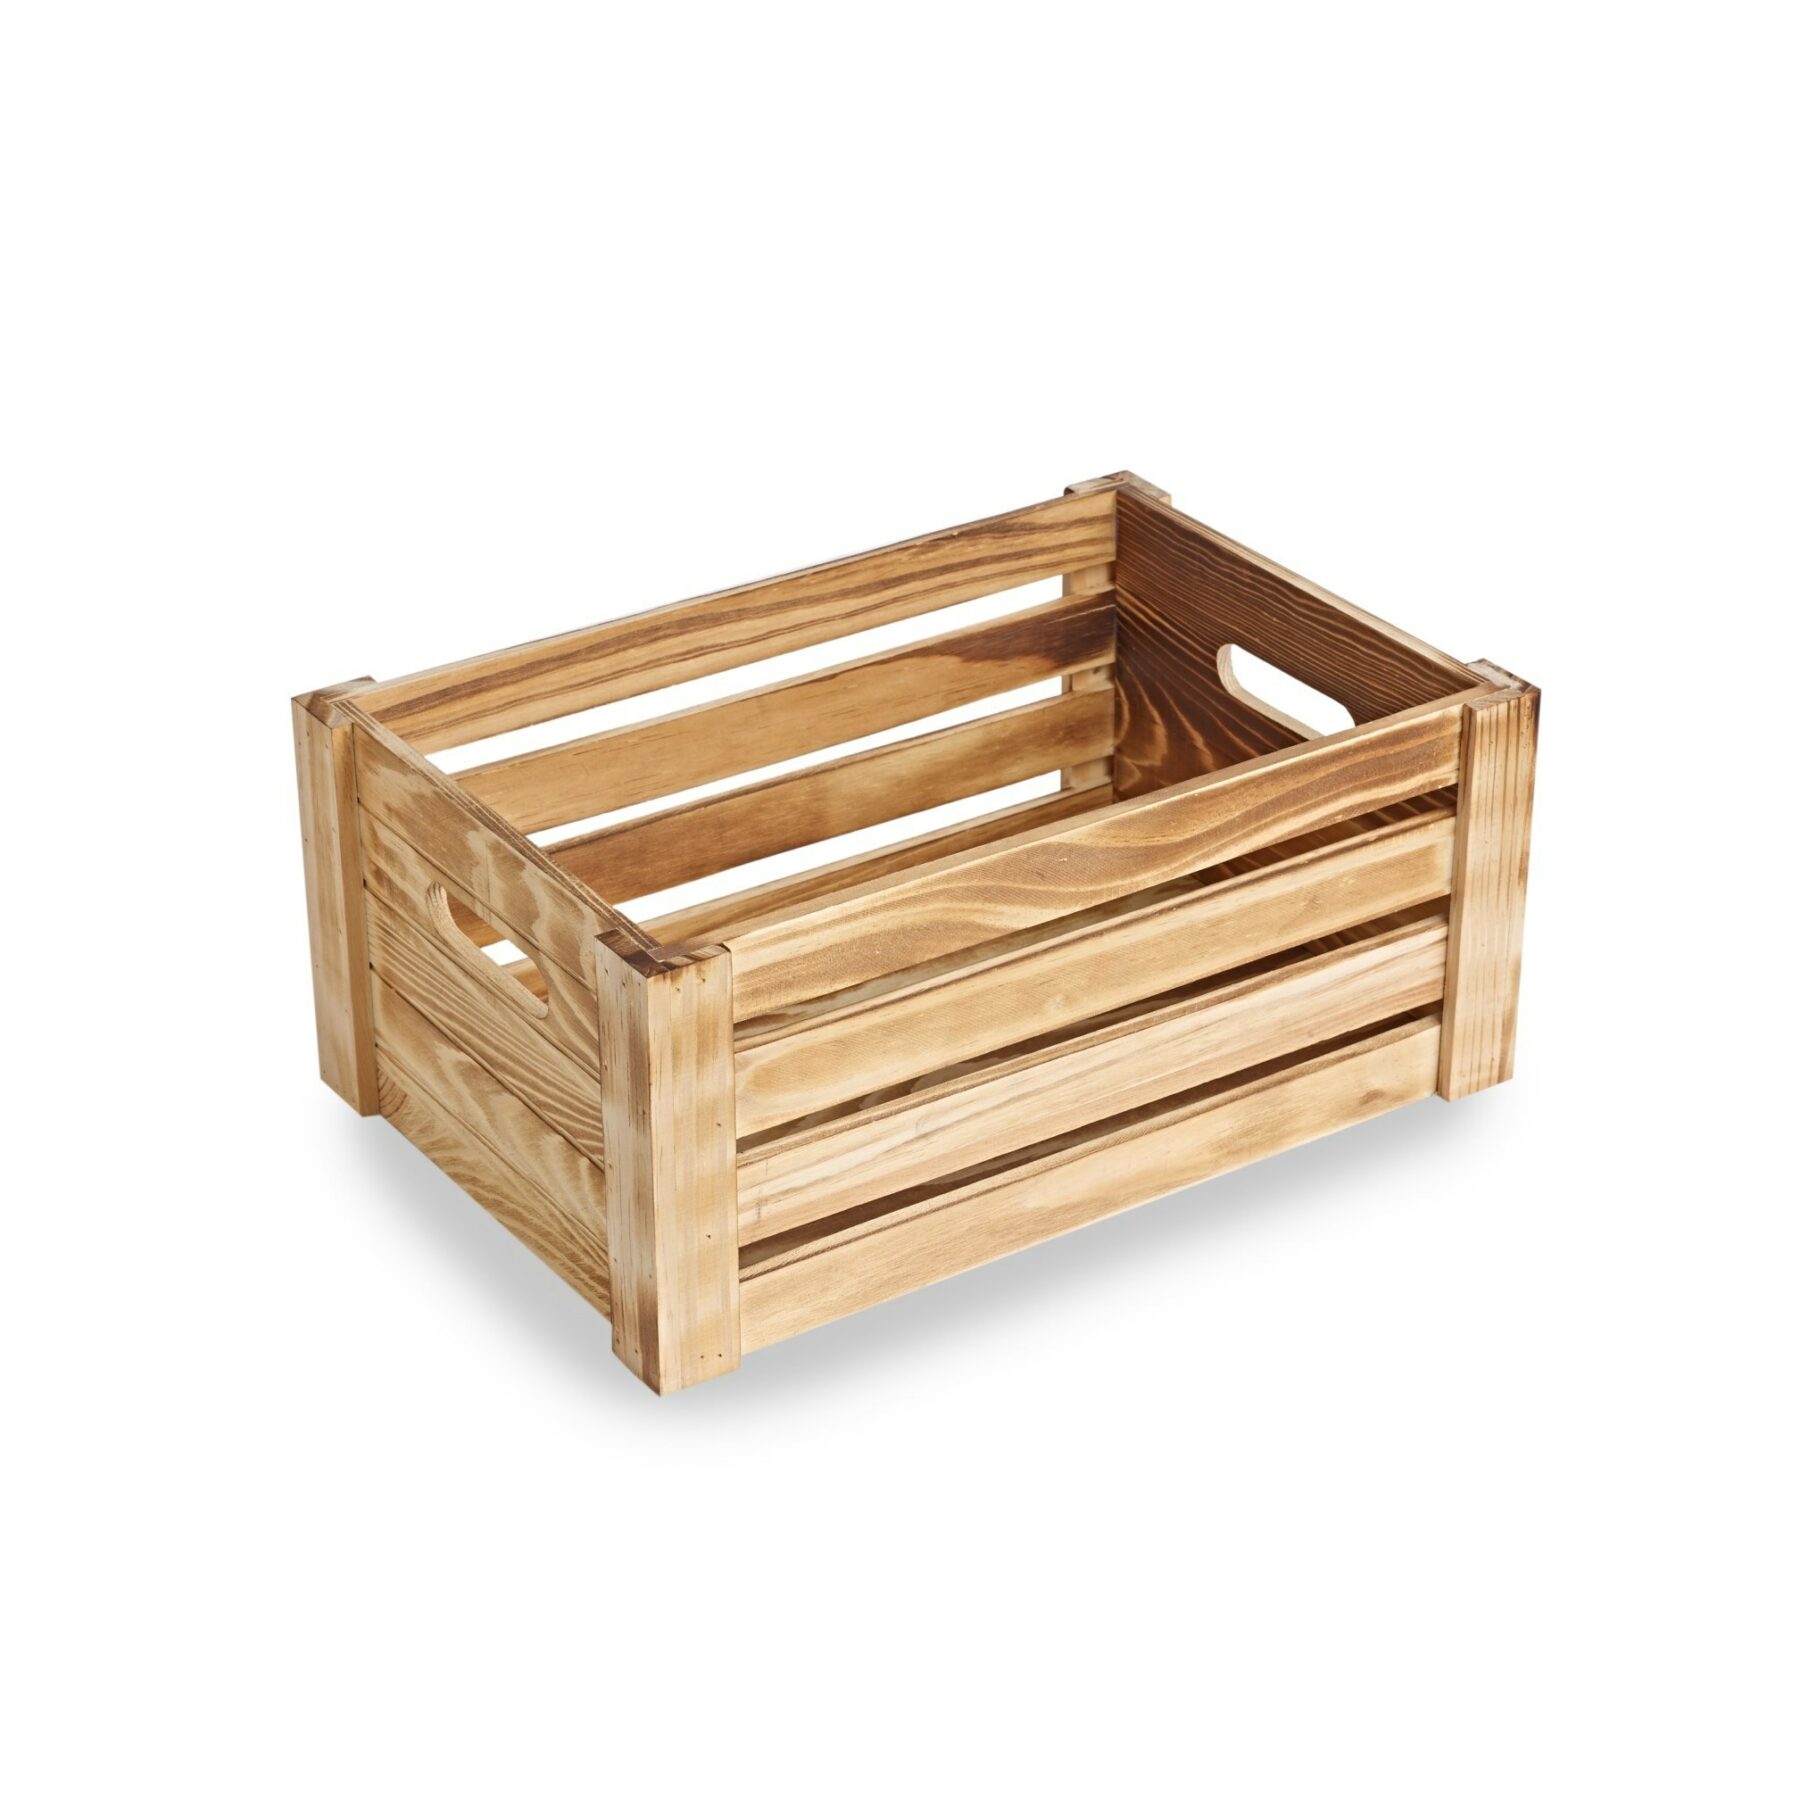 Medium Wooden Crate - Burnt Finish